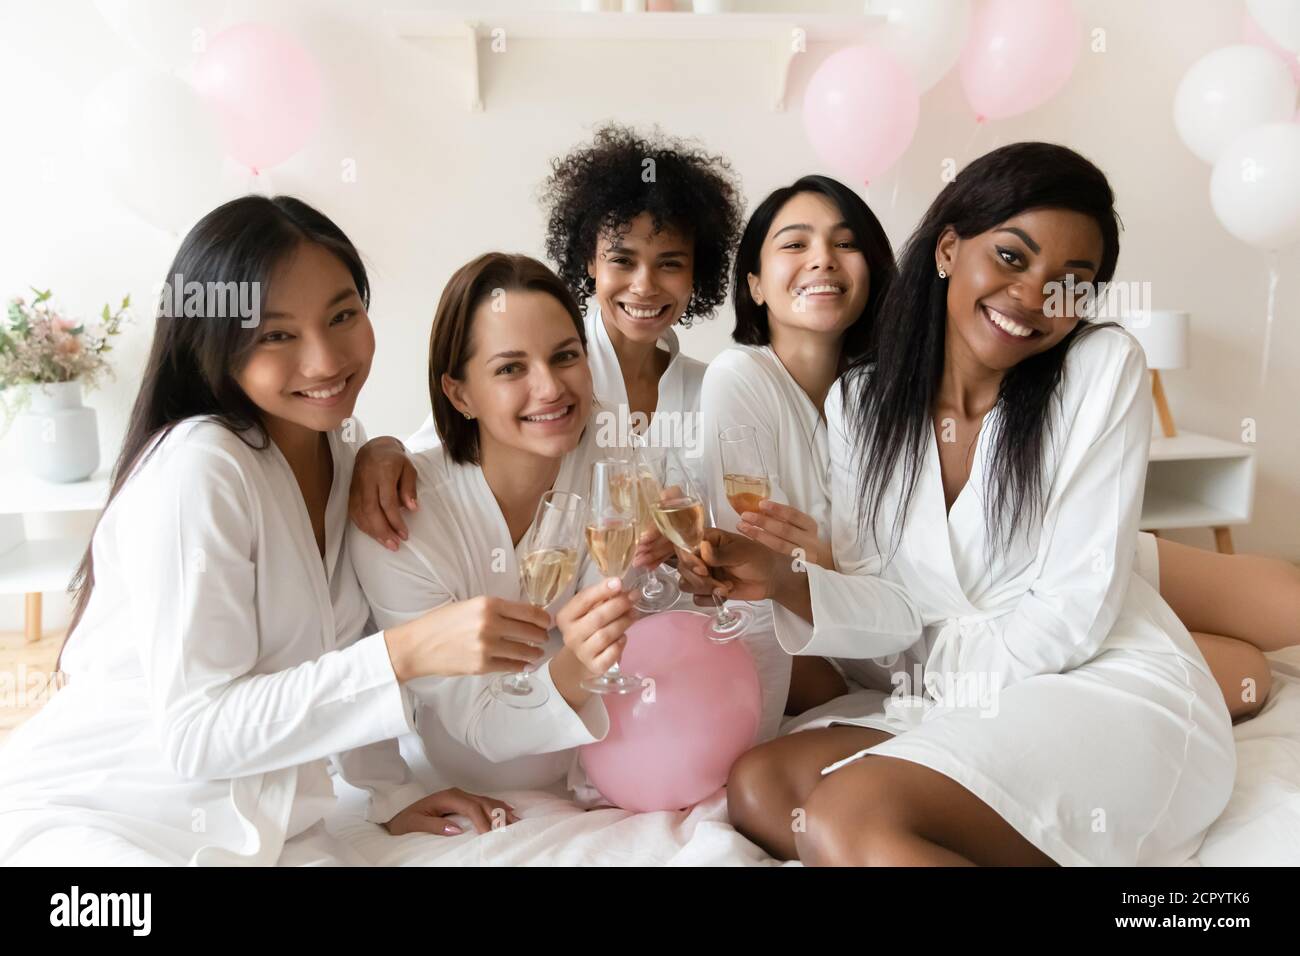 Portrait de jeunes amis souriants de race mixte appréciant la fête de Bachelorette. Banque D'Images